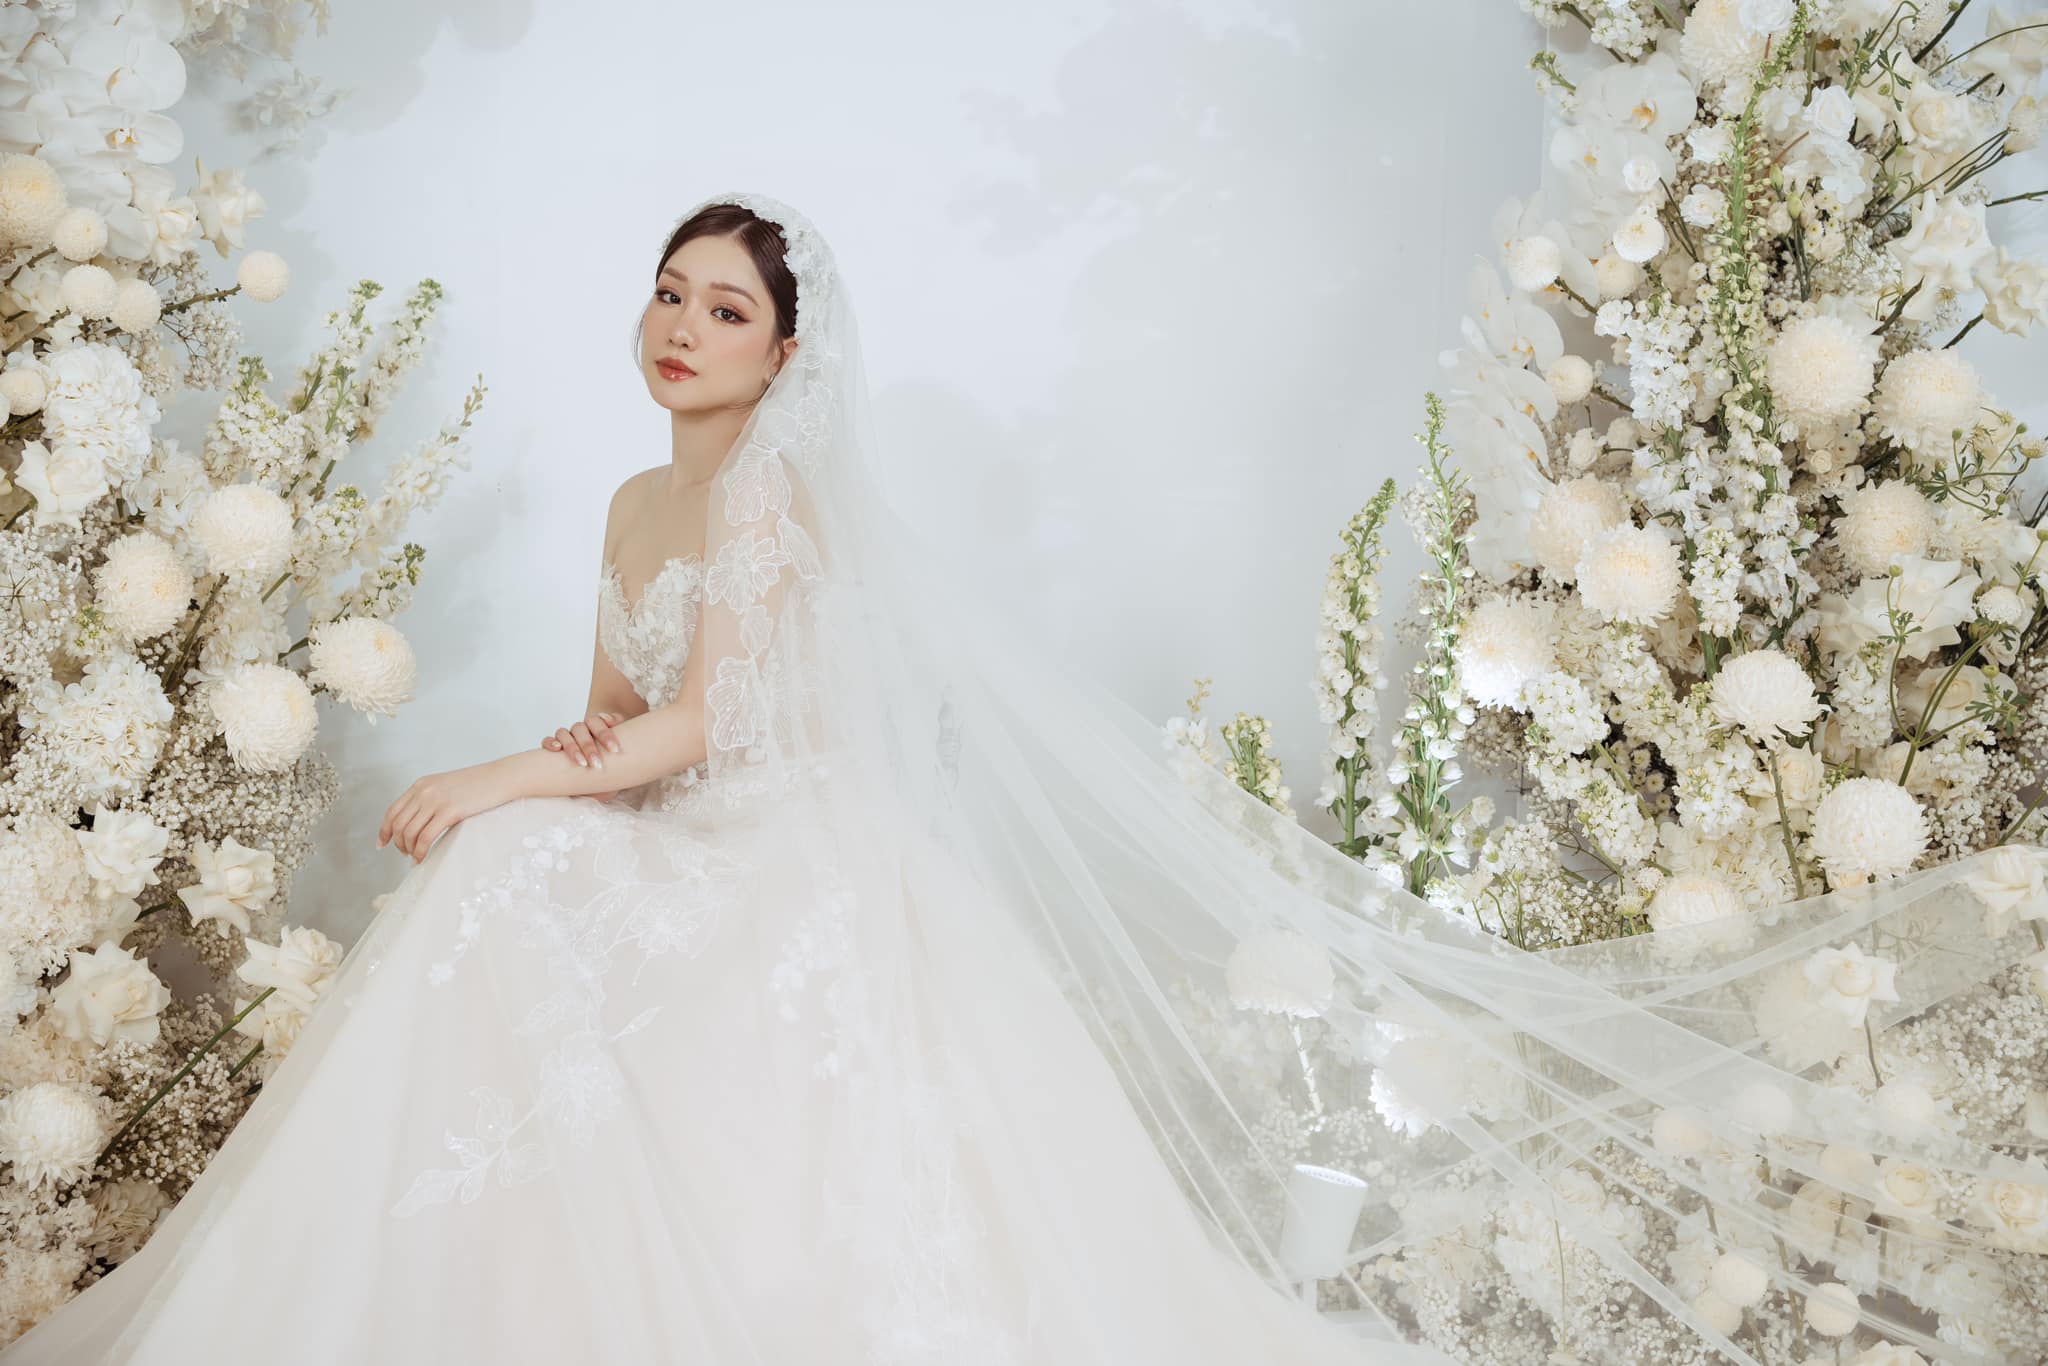 Gợi ý những mẫu váy cưới Hàn Quốc sang trọng nhất năm 2023
